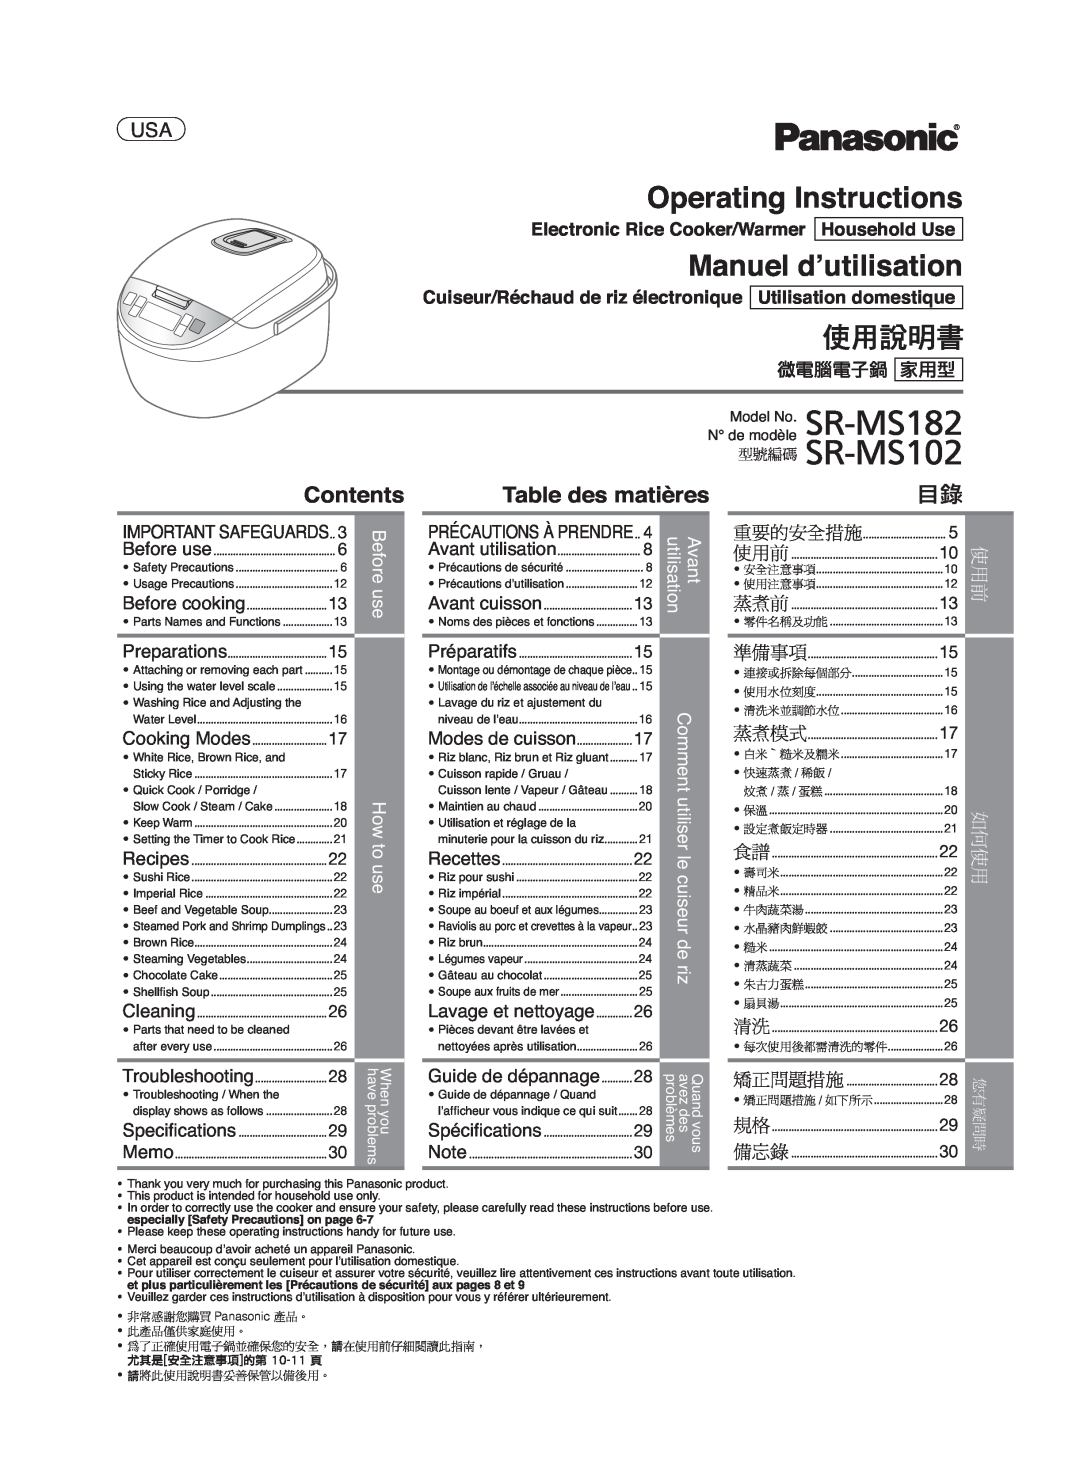 Panasonic SR-MS182 manual Operating Instructions, Manuel d’utilisation, Contents, Table des matières, Modes de cuisson 